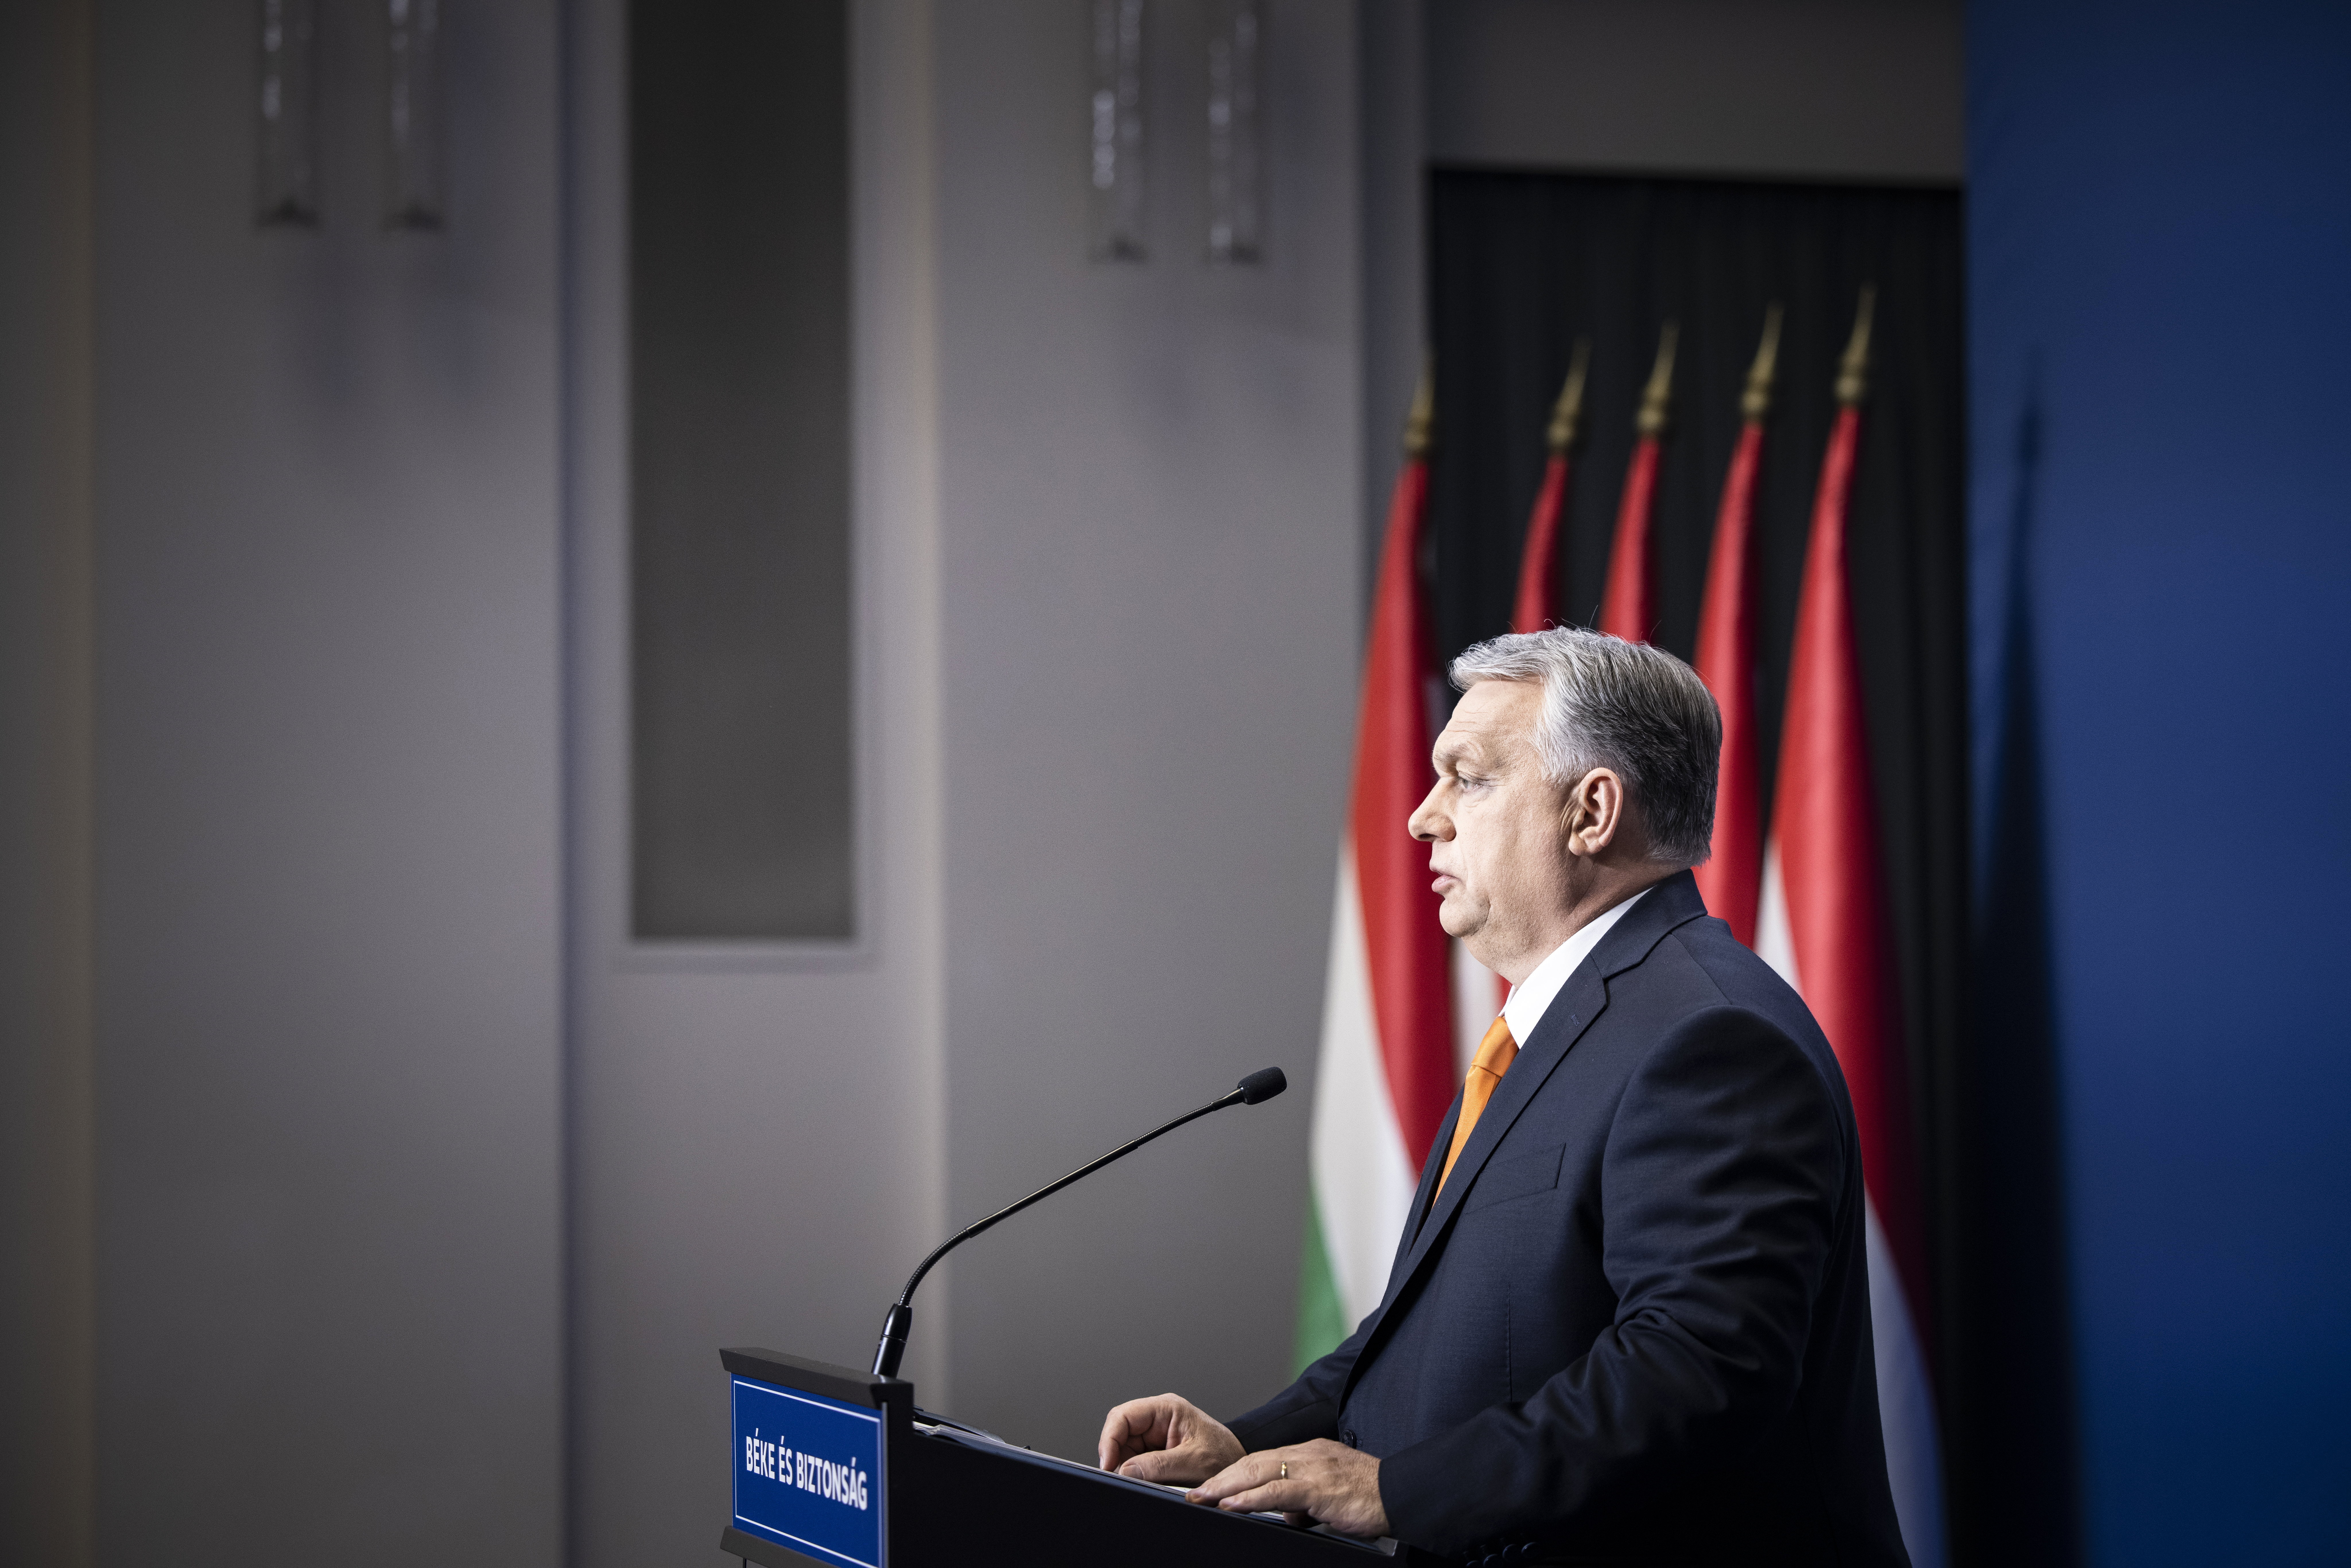 Elítéli Orbán Viktor a bucsai tömegmészárlást